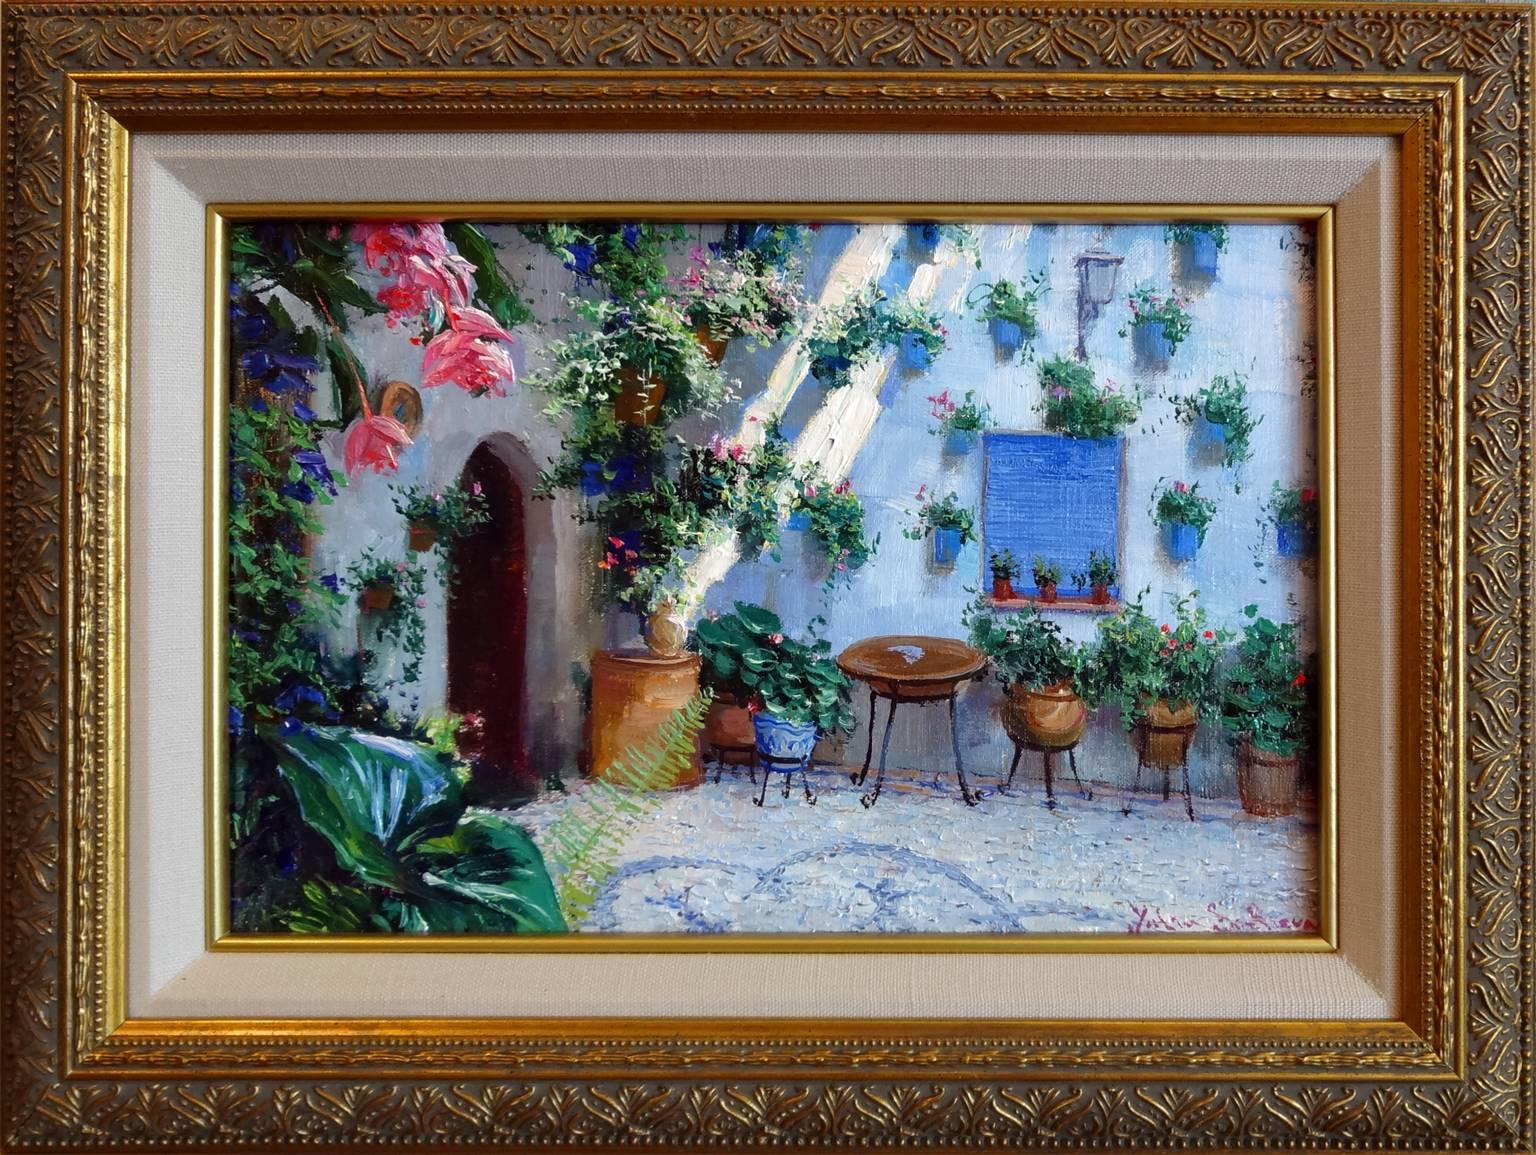 El Patio - Painting by Yulia Sonlleva